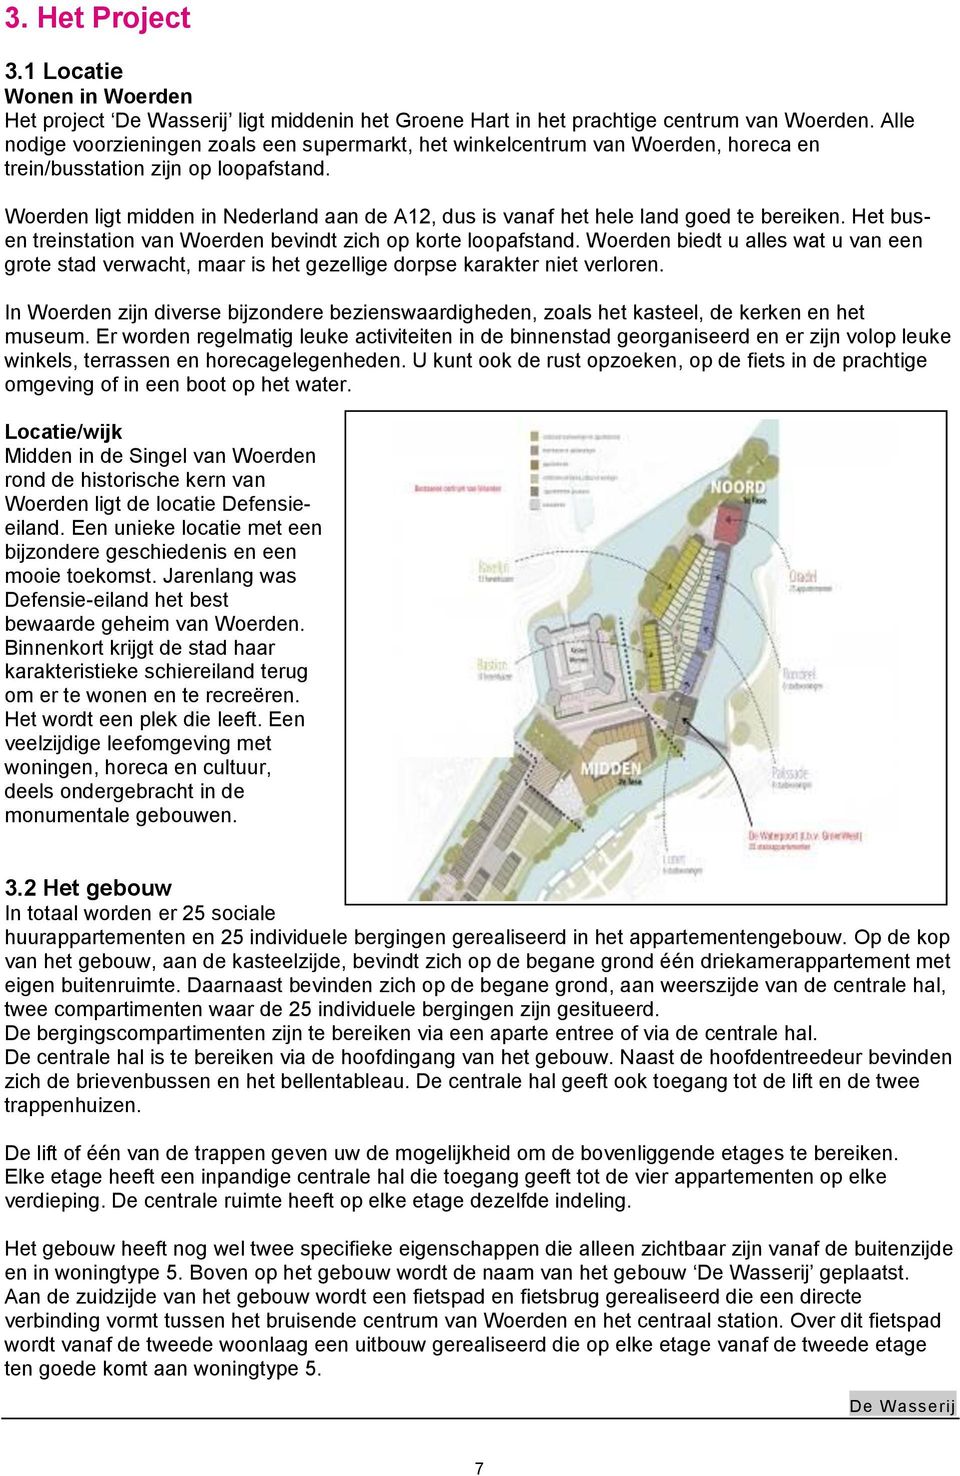 Woerden ligt midden in Nederland aan de A12, dus is vanaf het hele land goed te bereiken. Het busen treinstation van Woerden bevindt zich op korte loopafstand.